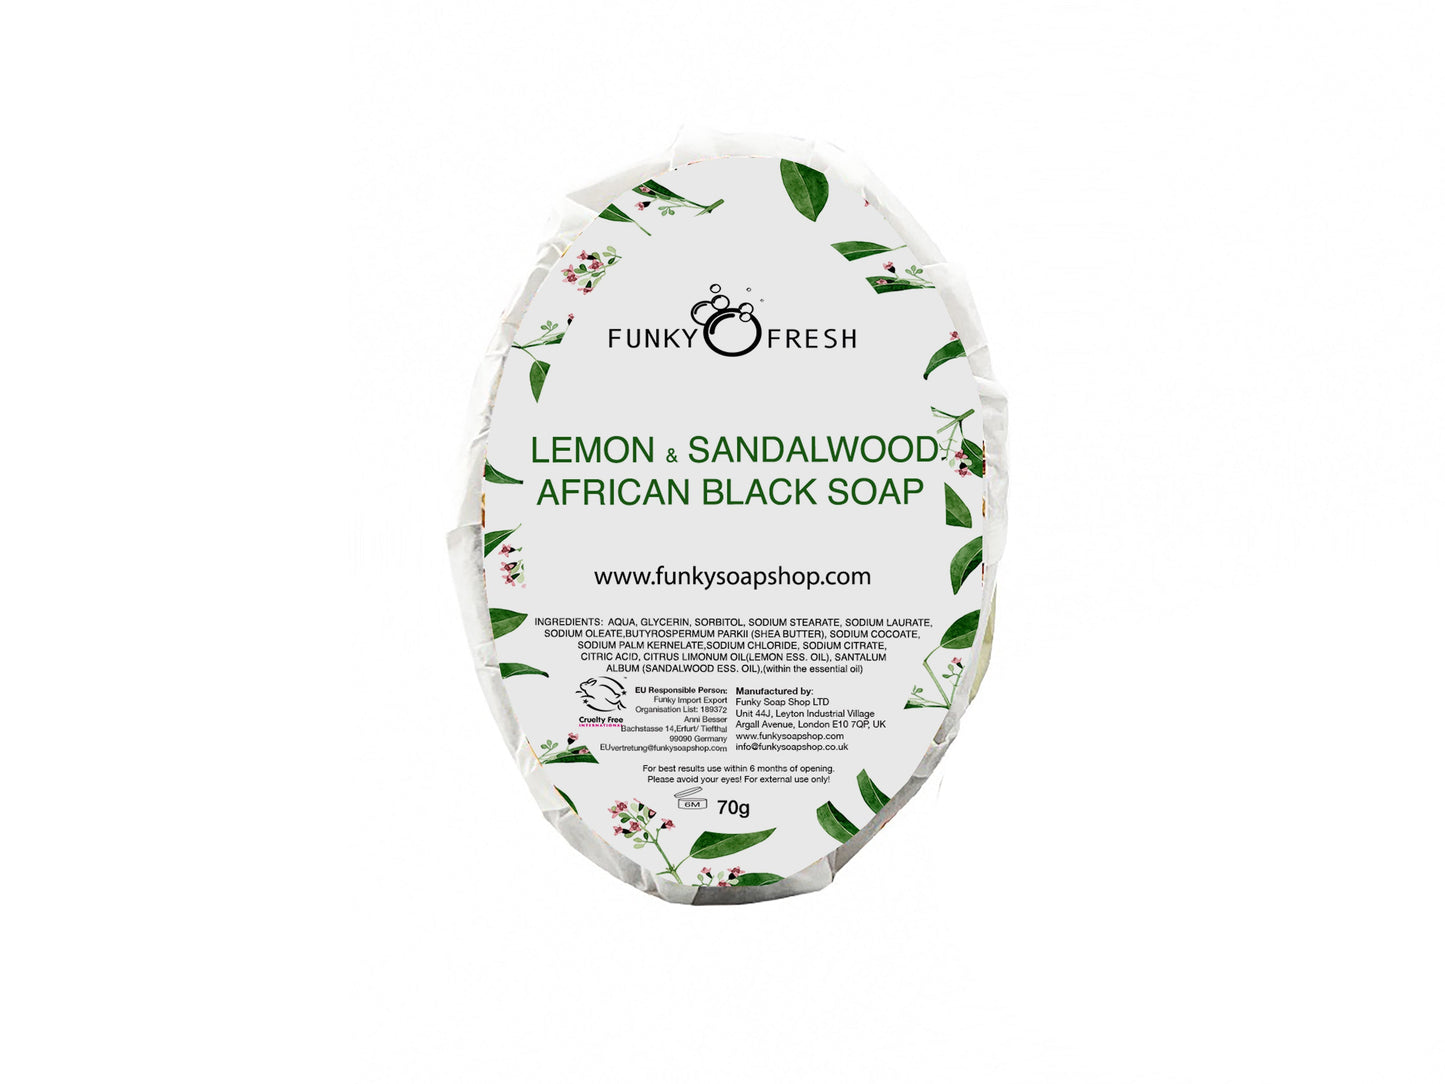 Lemon and Sandalwood African Black Soap - Funky Soap Shop